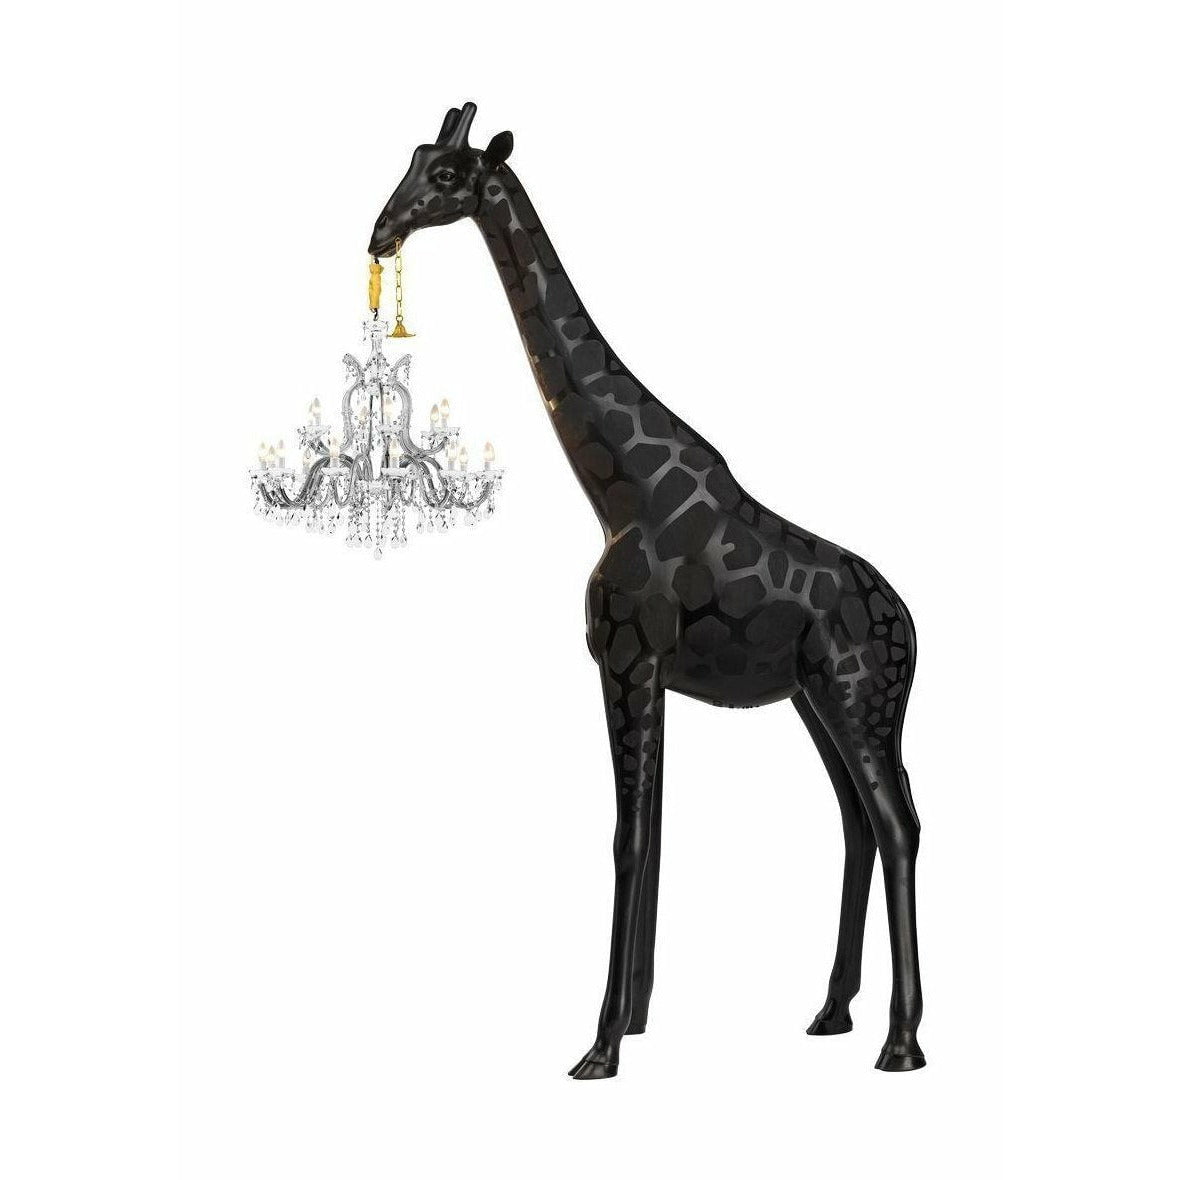 QEEBOO GIRAFFE IN LIEBE INDOOR SHOHR LAMP H 4M, Schwarz